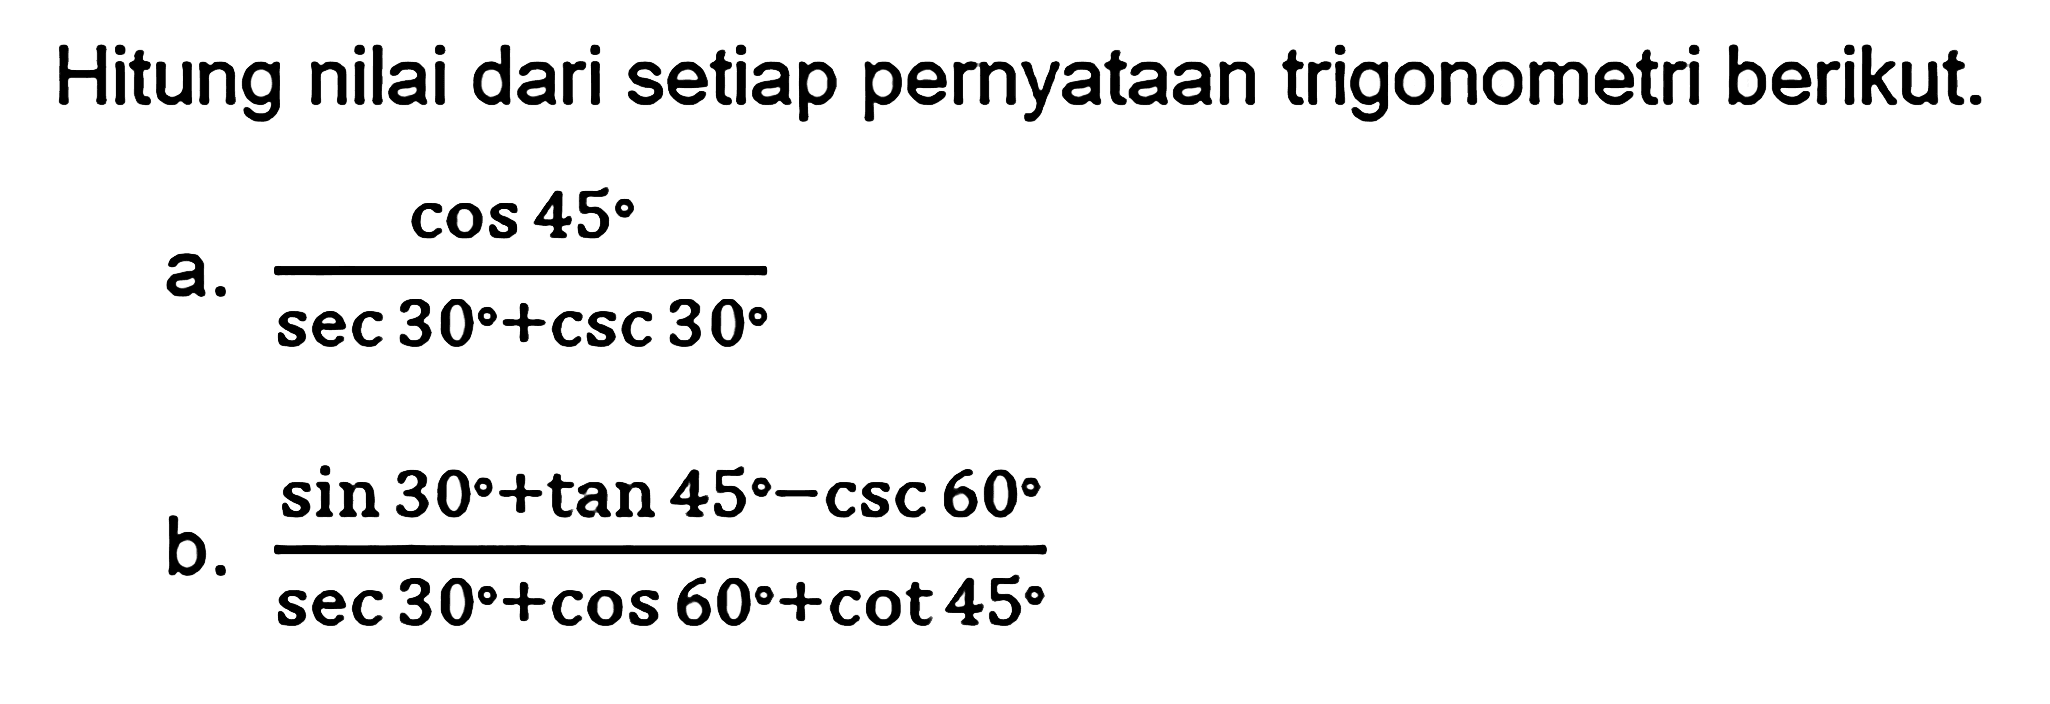 Hitung nilai dari setiap pernyataan trigonometri berikut. a. cos 45/(sec 30+csc 30) b. (sin 30+tan 45-csc 60)/(sec 30+cos 60+ cot 45)